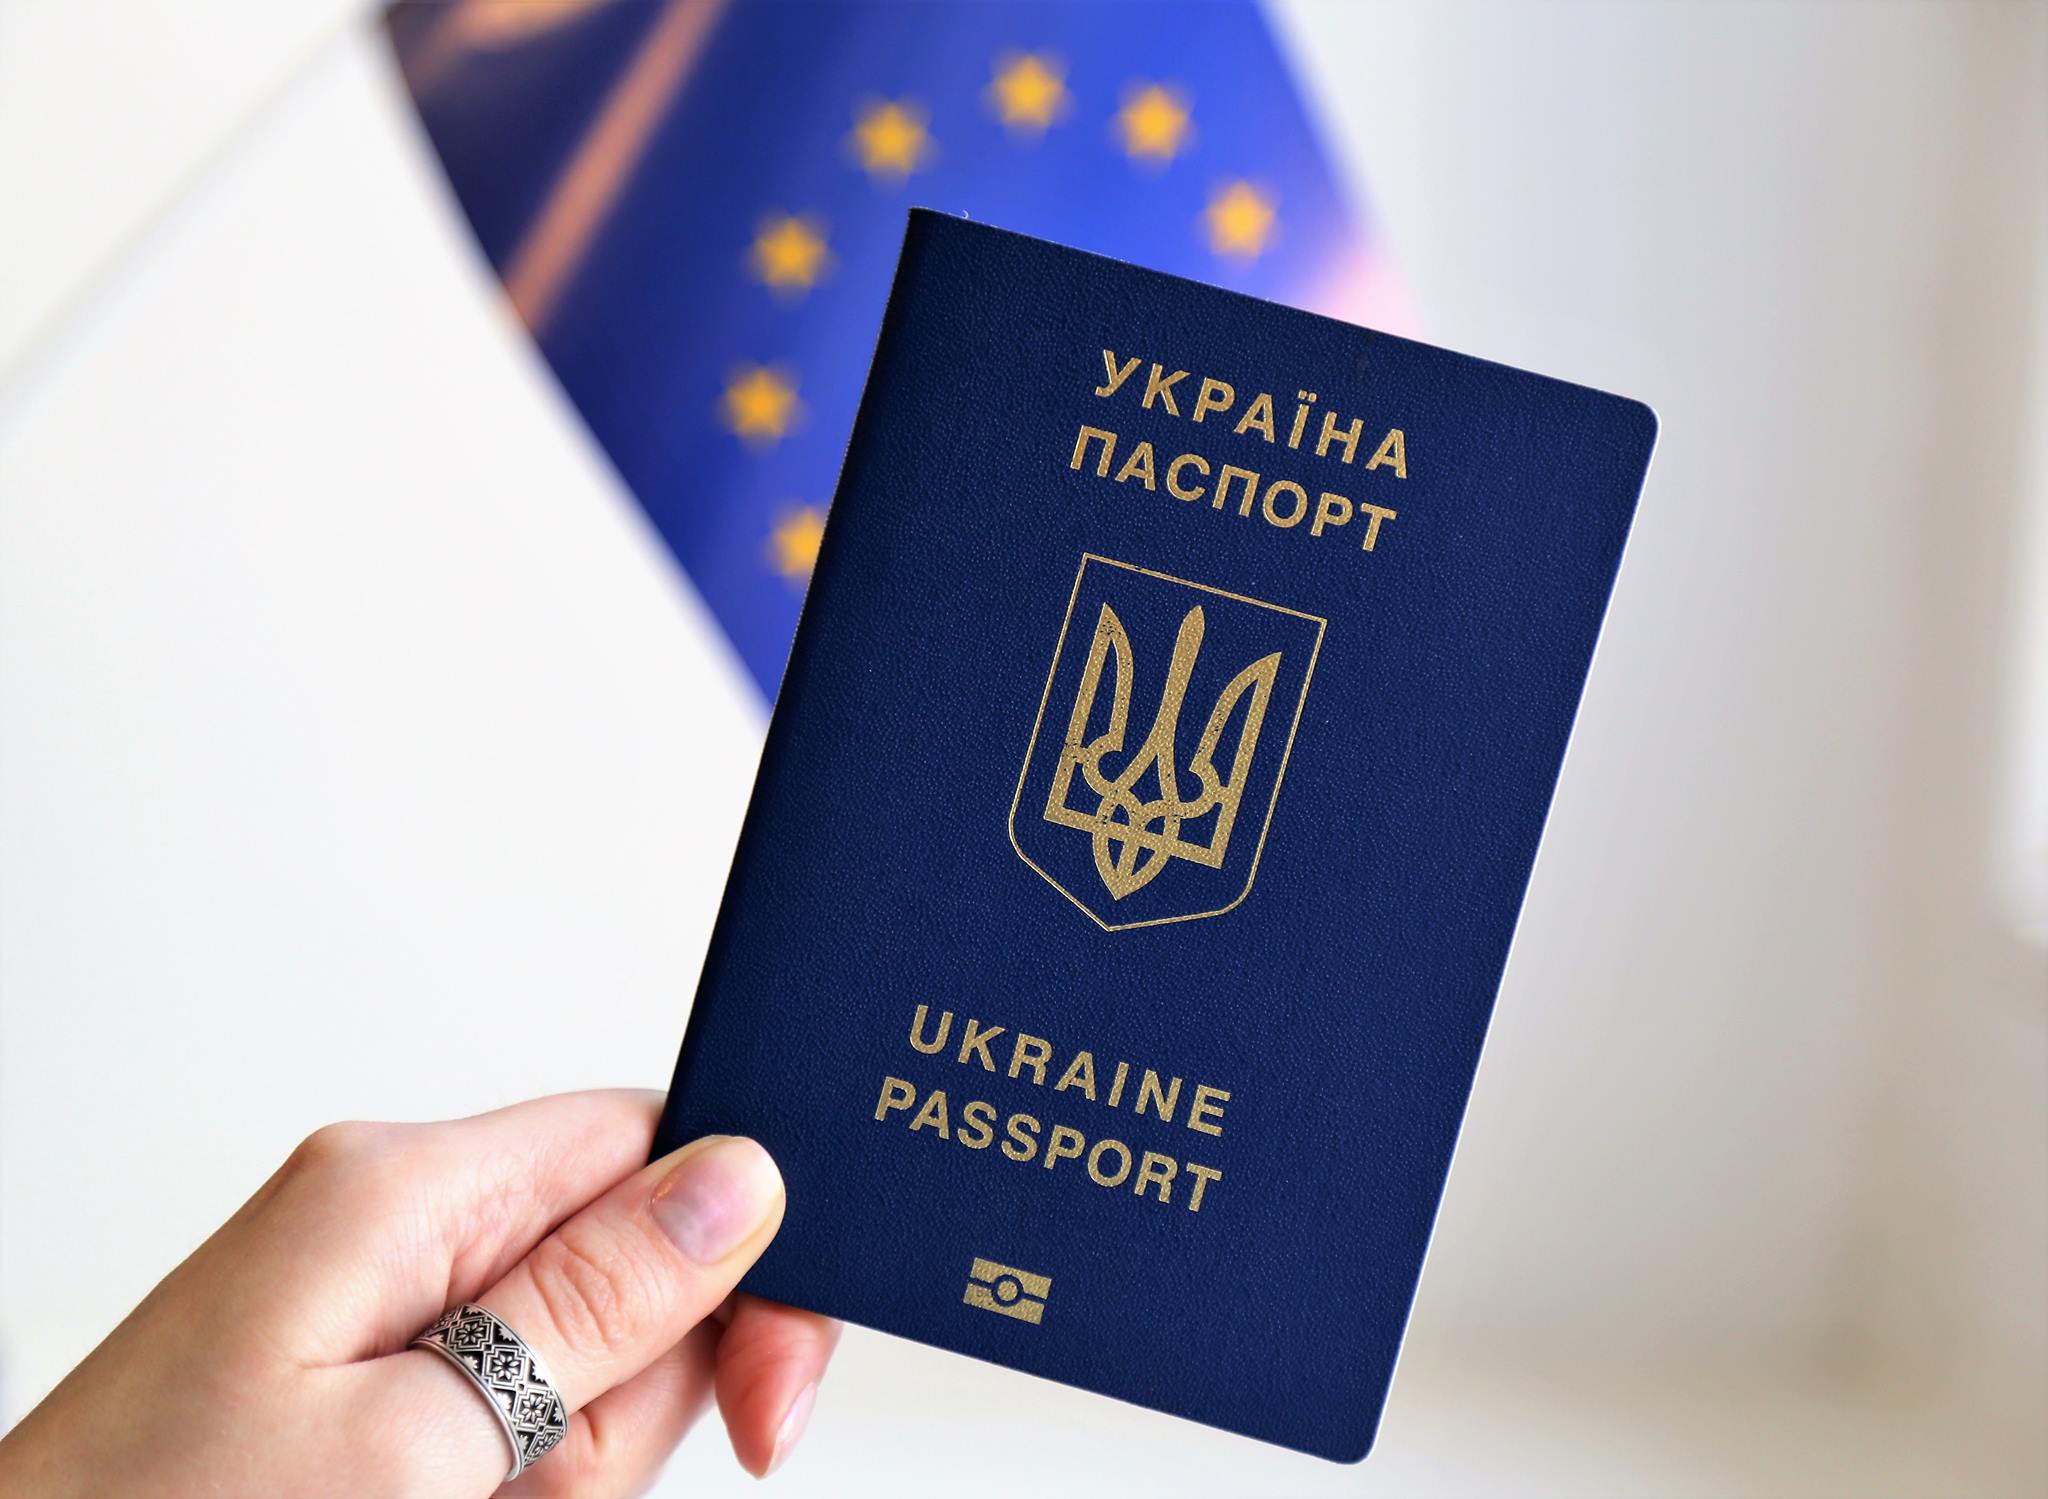 Электронная очередь создала проблемы для крымчан при получении паспорта